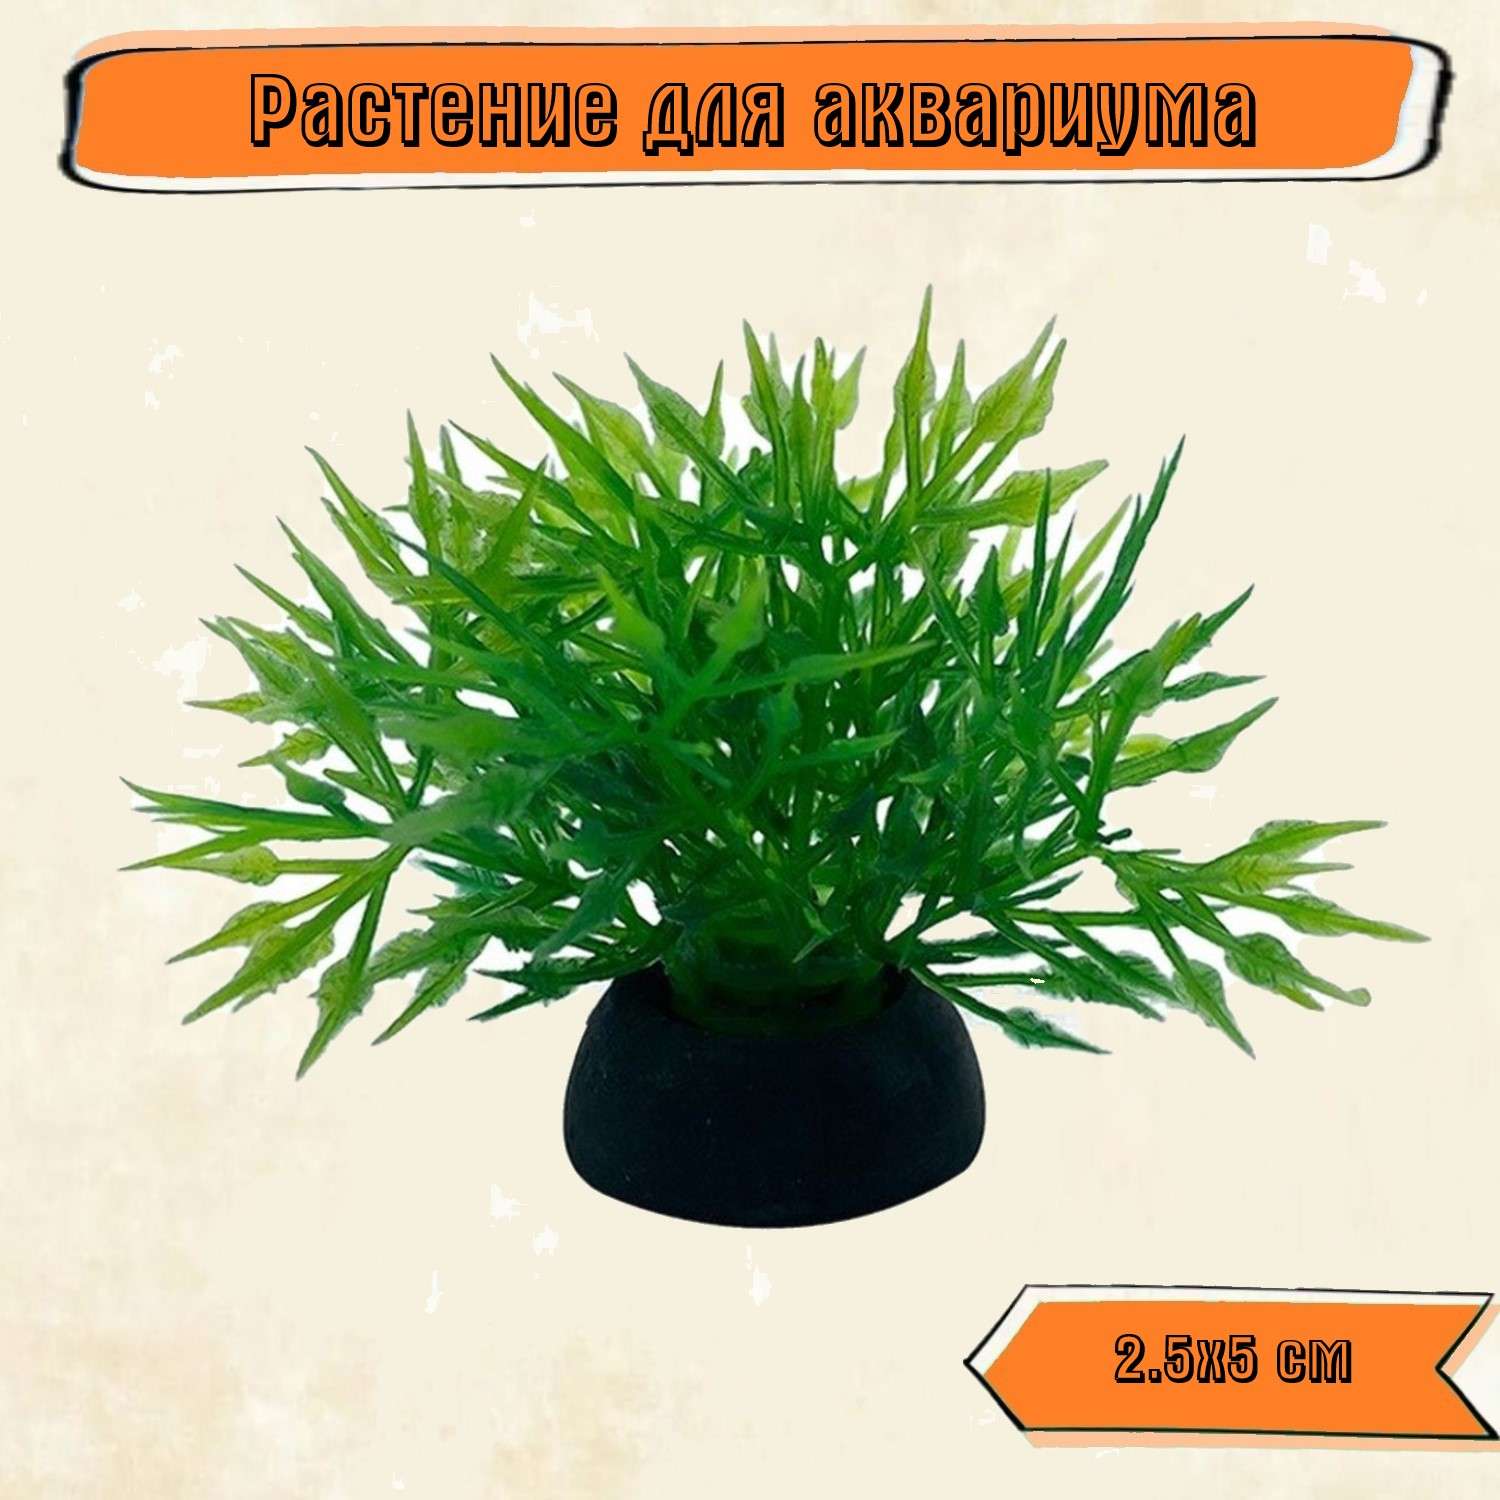 Аквариумное растение Rabizy кустик 2.5х5 см - фото 1